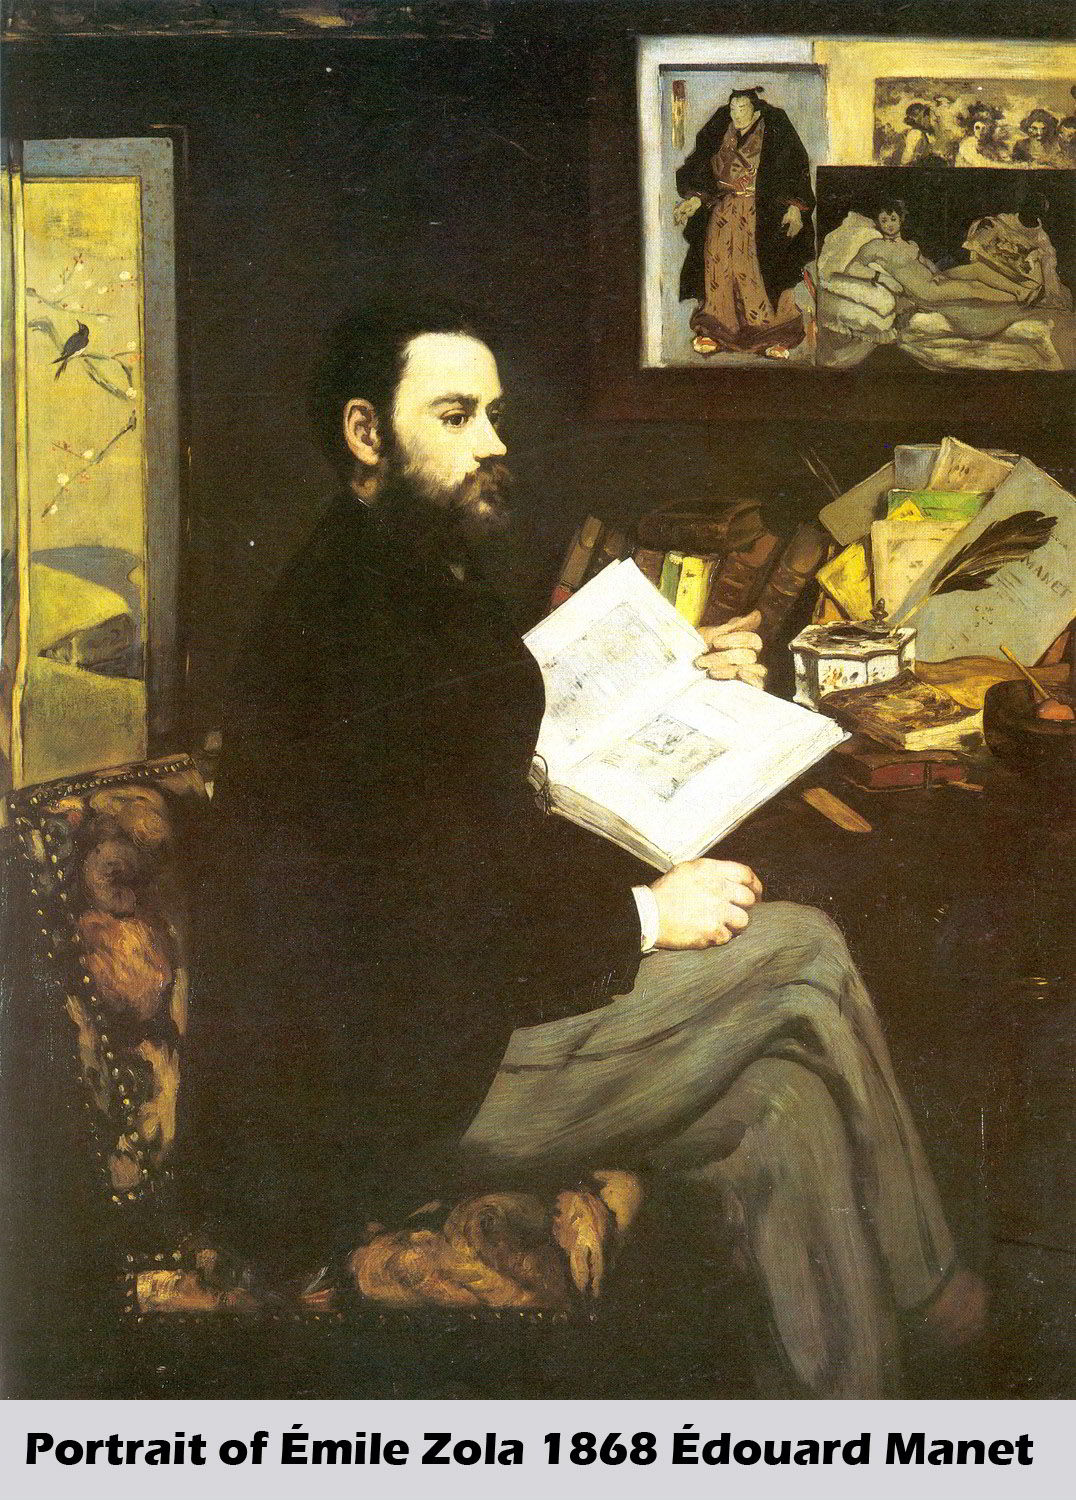 Portrait of Émile Zola by Édouard Manet